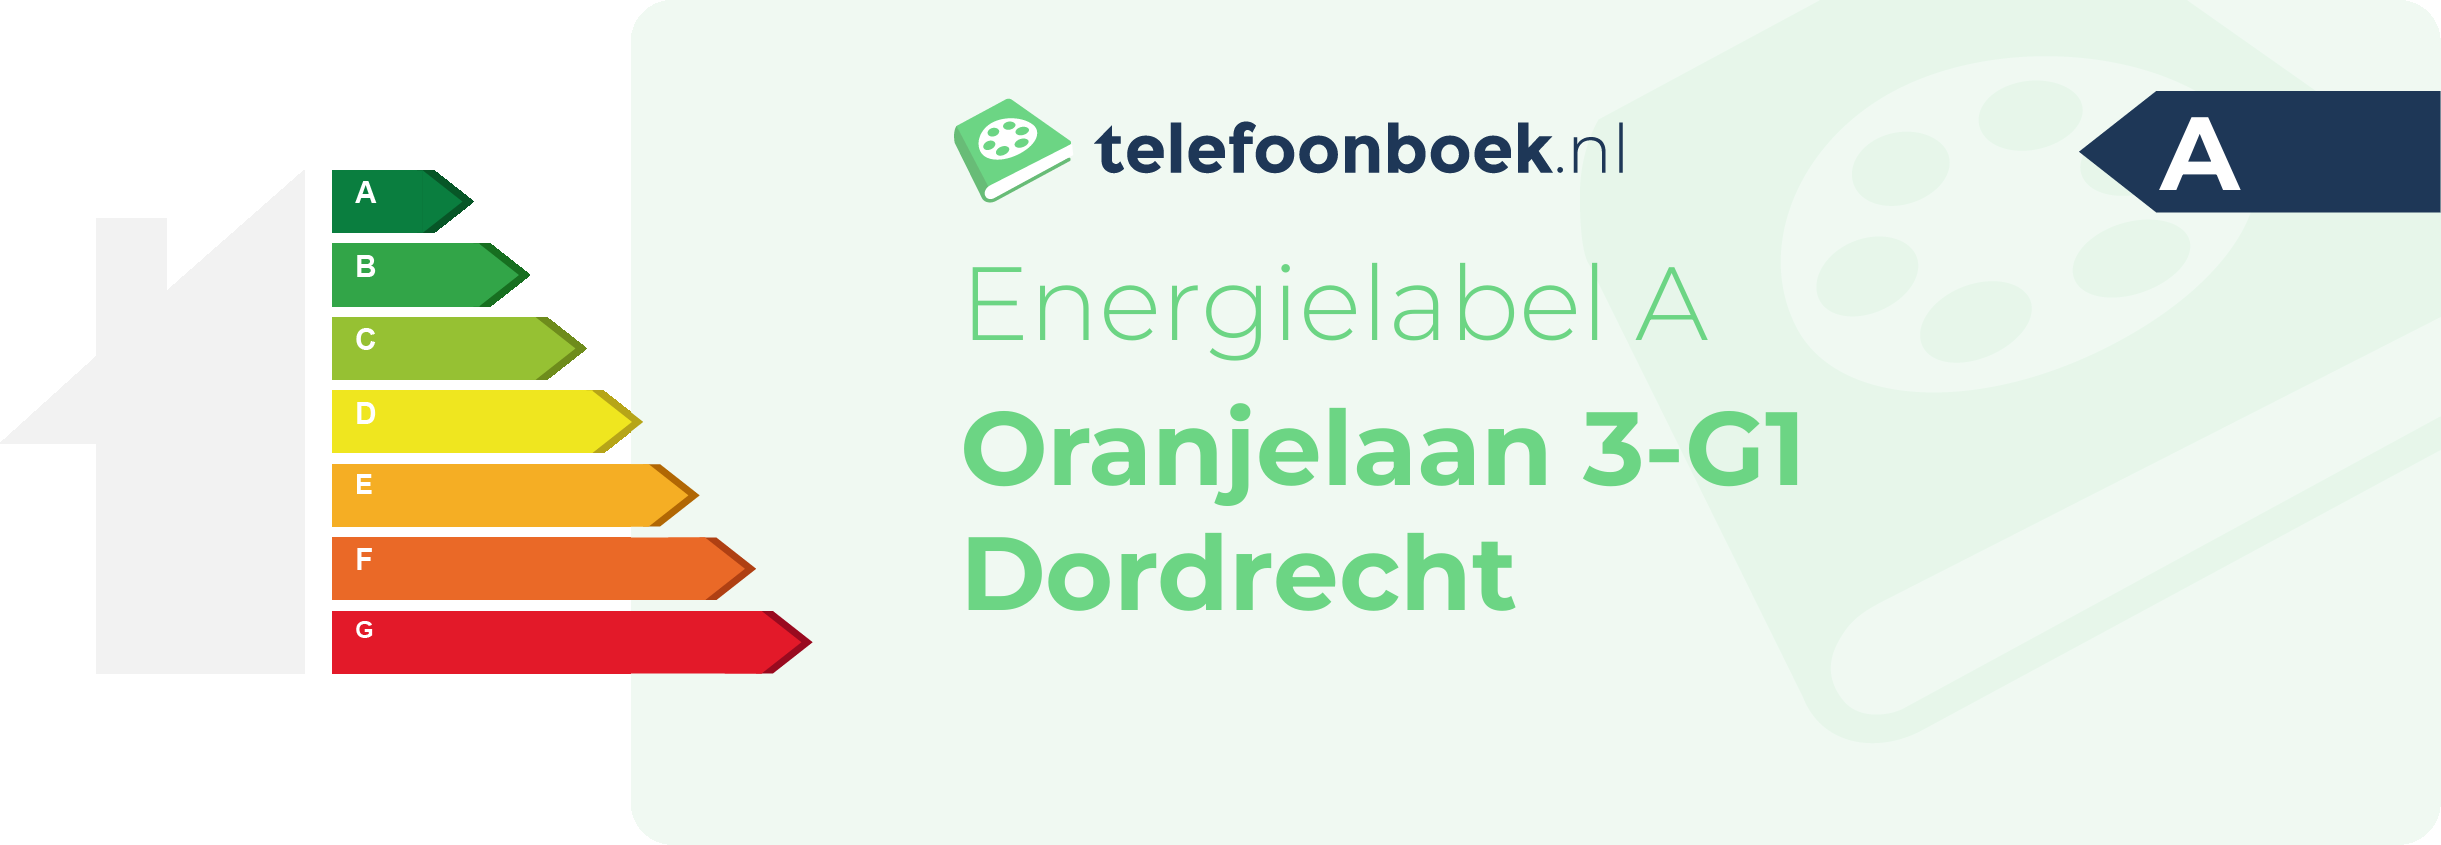 Energielabel Oranjelaan 3-G1 Dordrecht